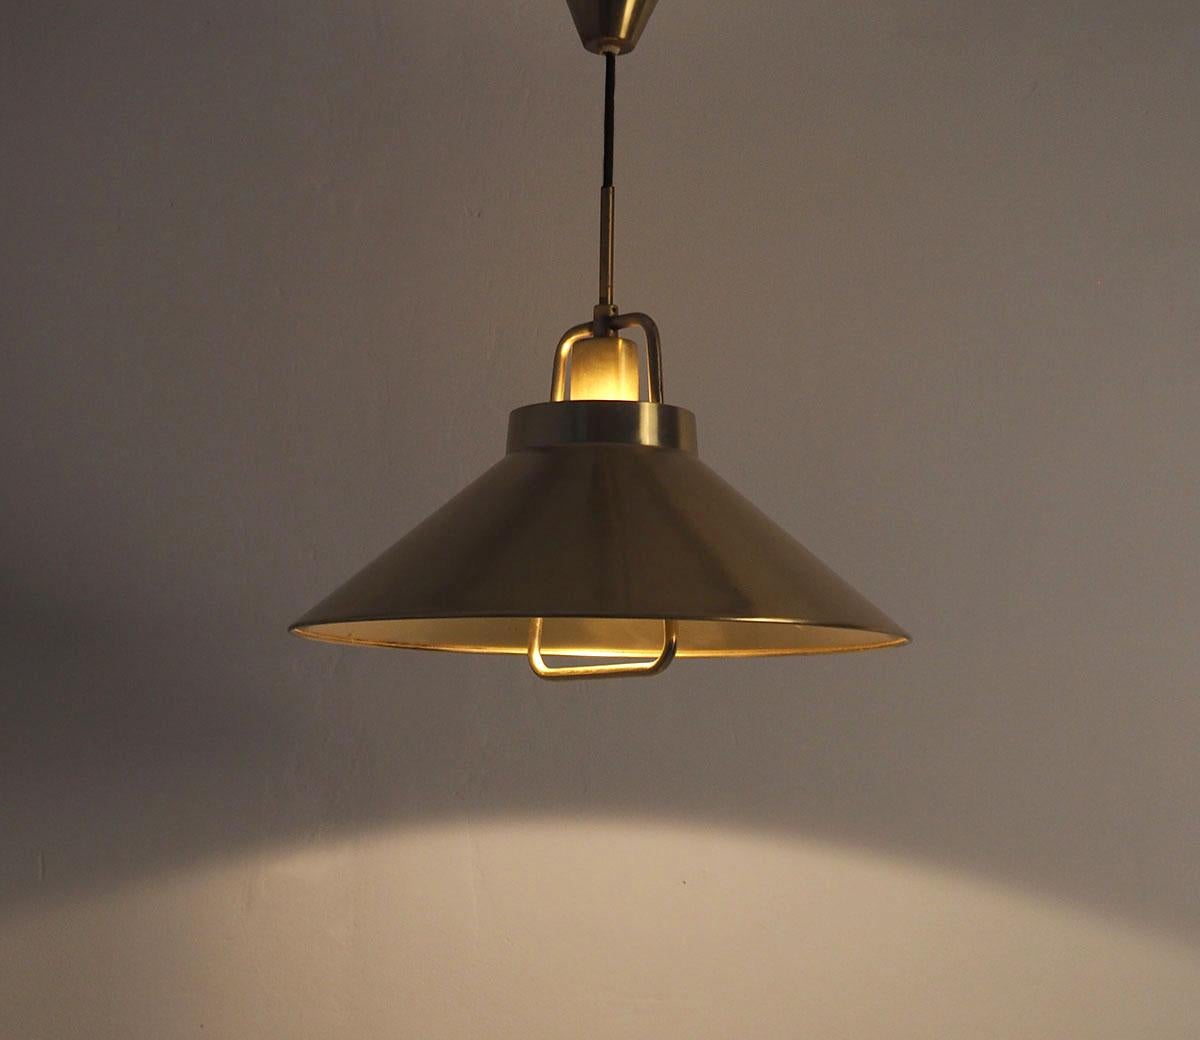 Hängelampe aus Messing, entworfen von Fritz Schlegel, hergestellt von Lyfa 1960er Jahre

Modell P295.

Die Leuchte ist über einen Flaschenzug in einem Messinggehäuse höhenverstellbar. Die Lampe kann durch Ziehen oder Schieben nach oben stufenlos